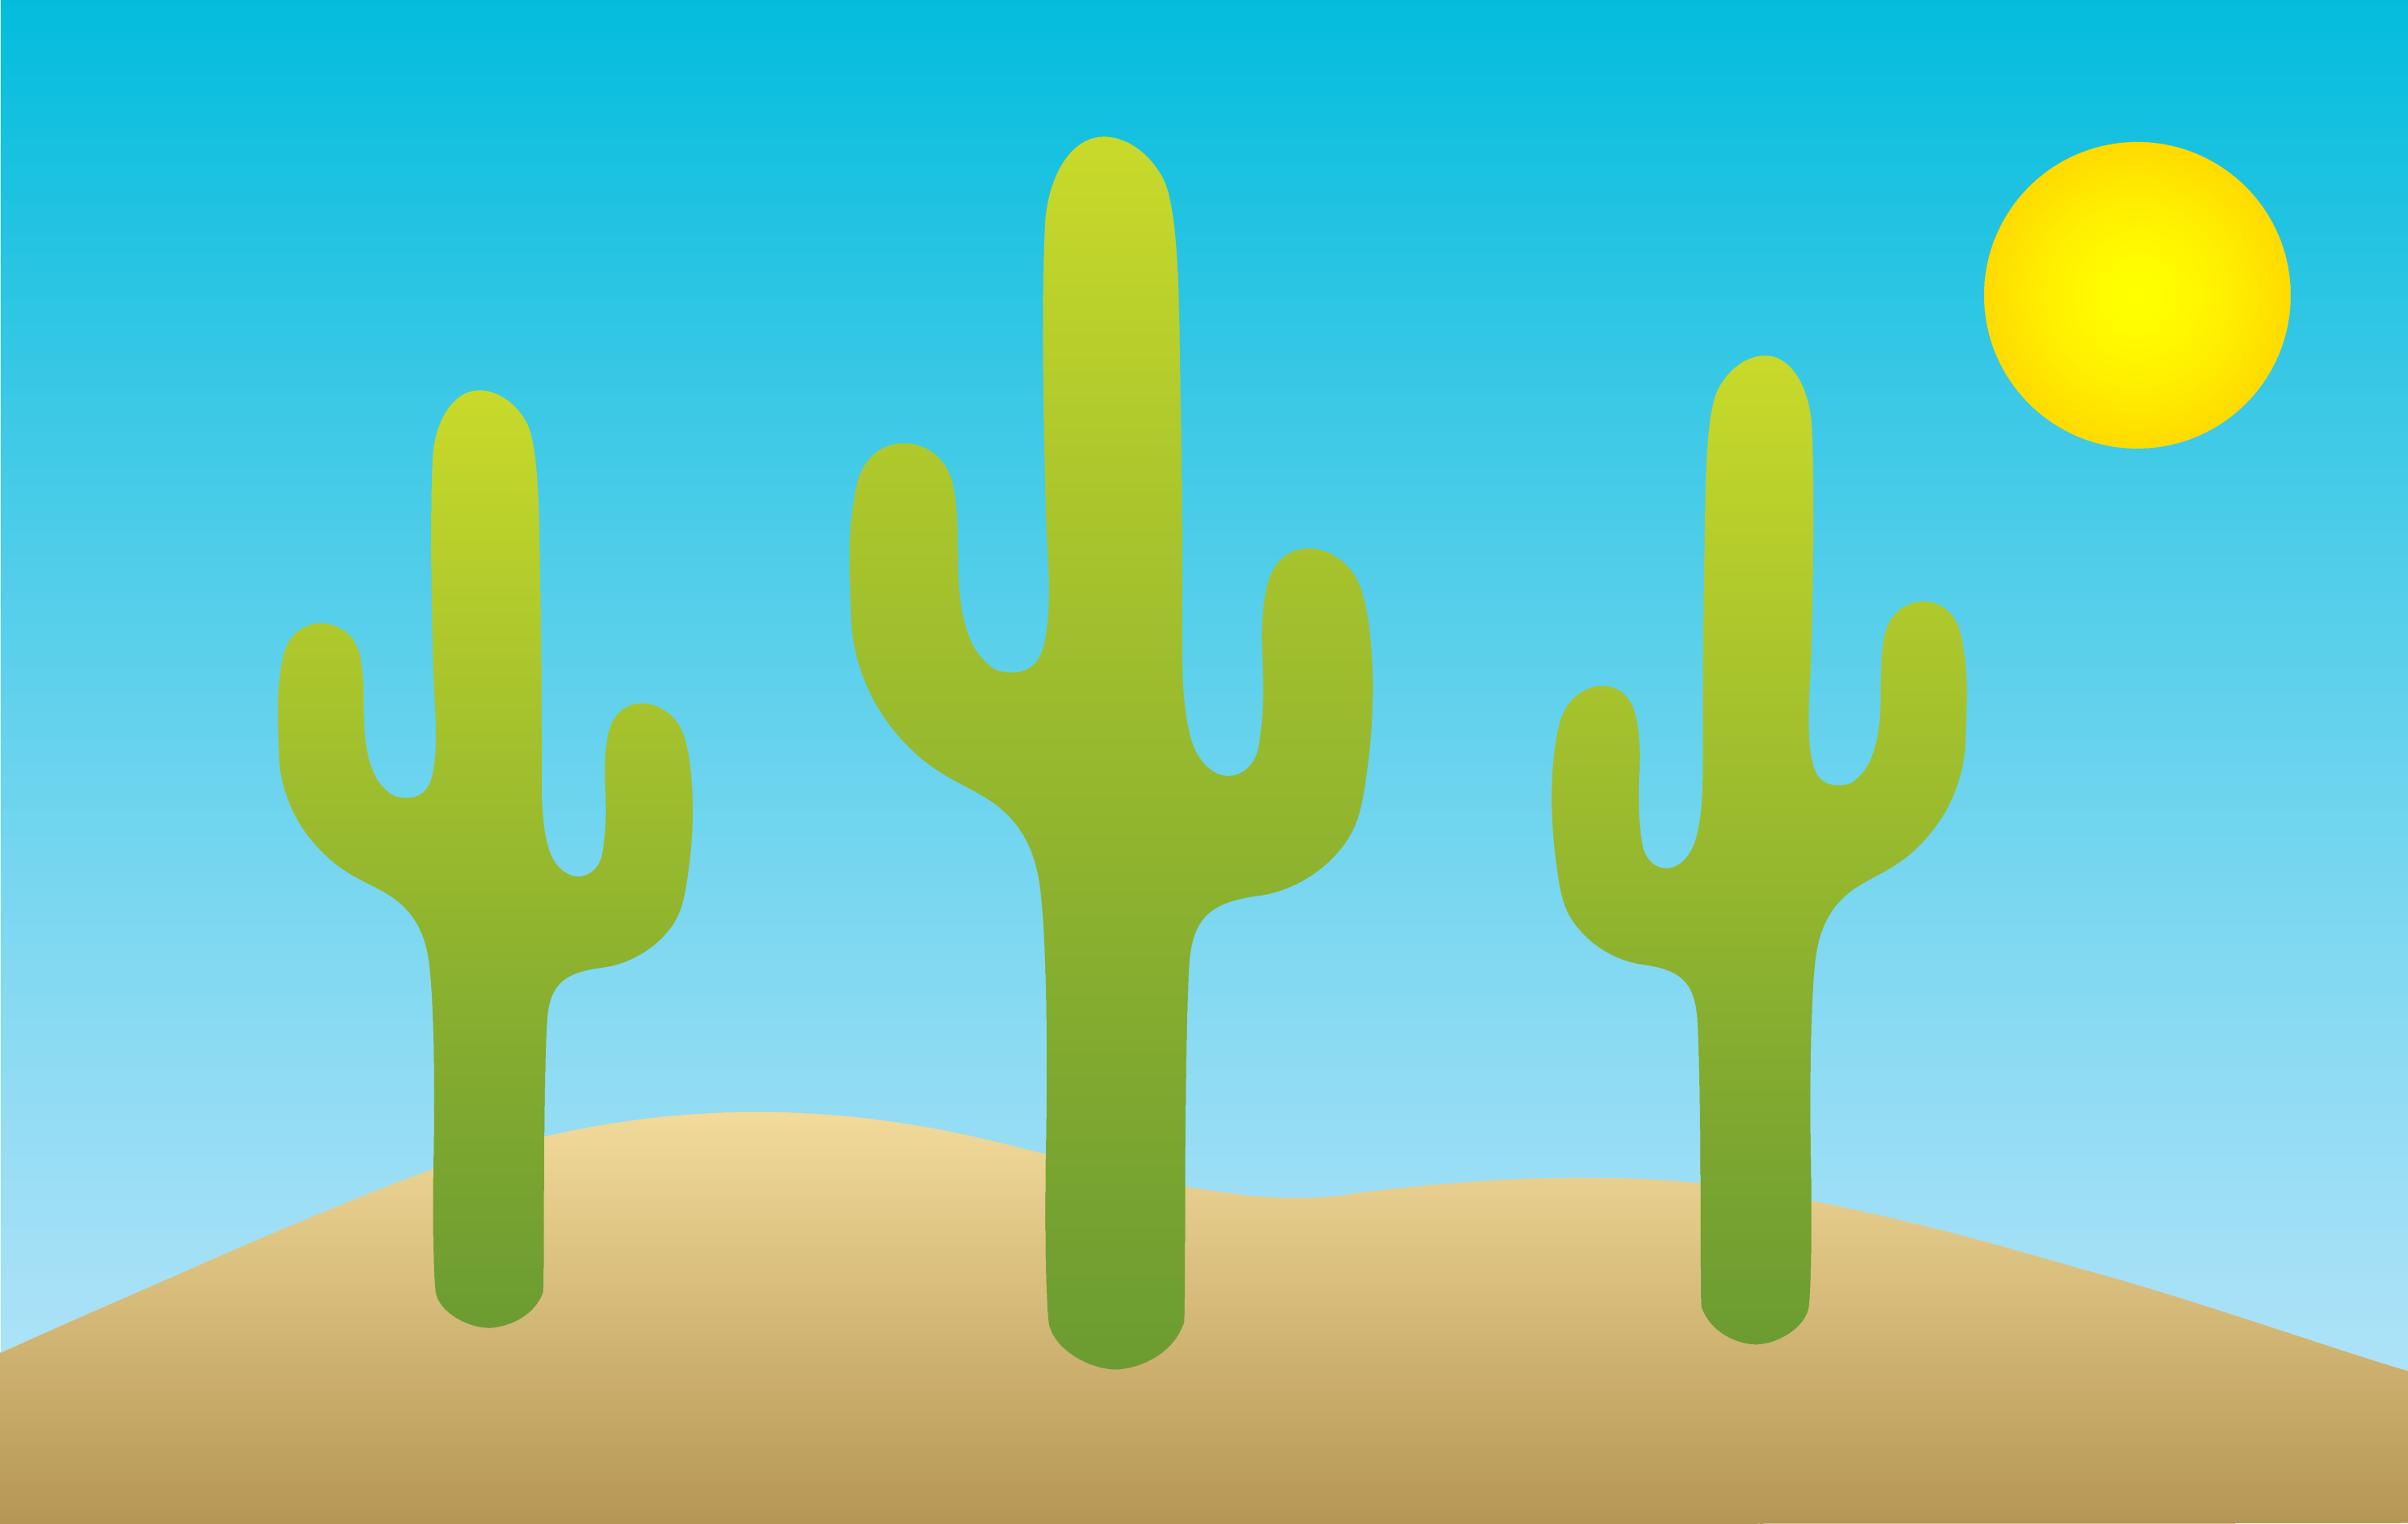 Desert Cactus Clip Art